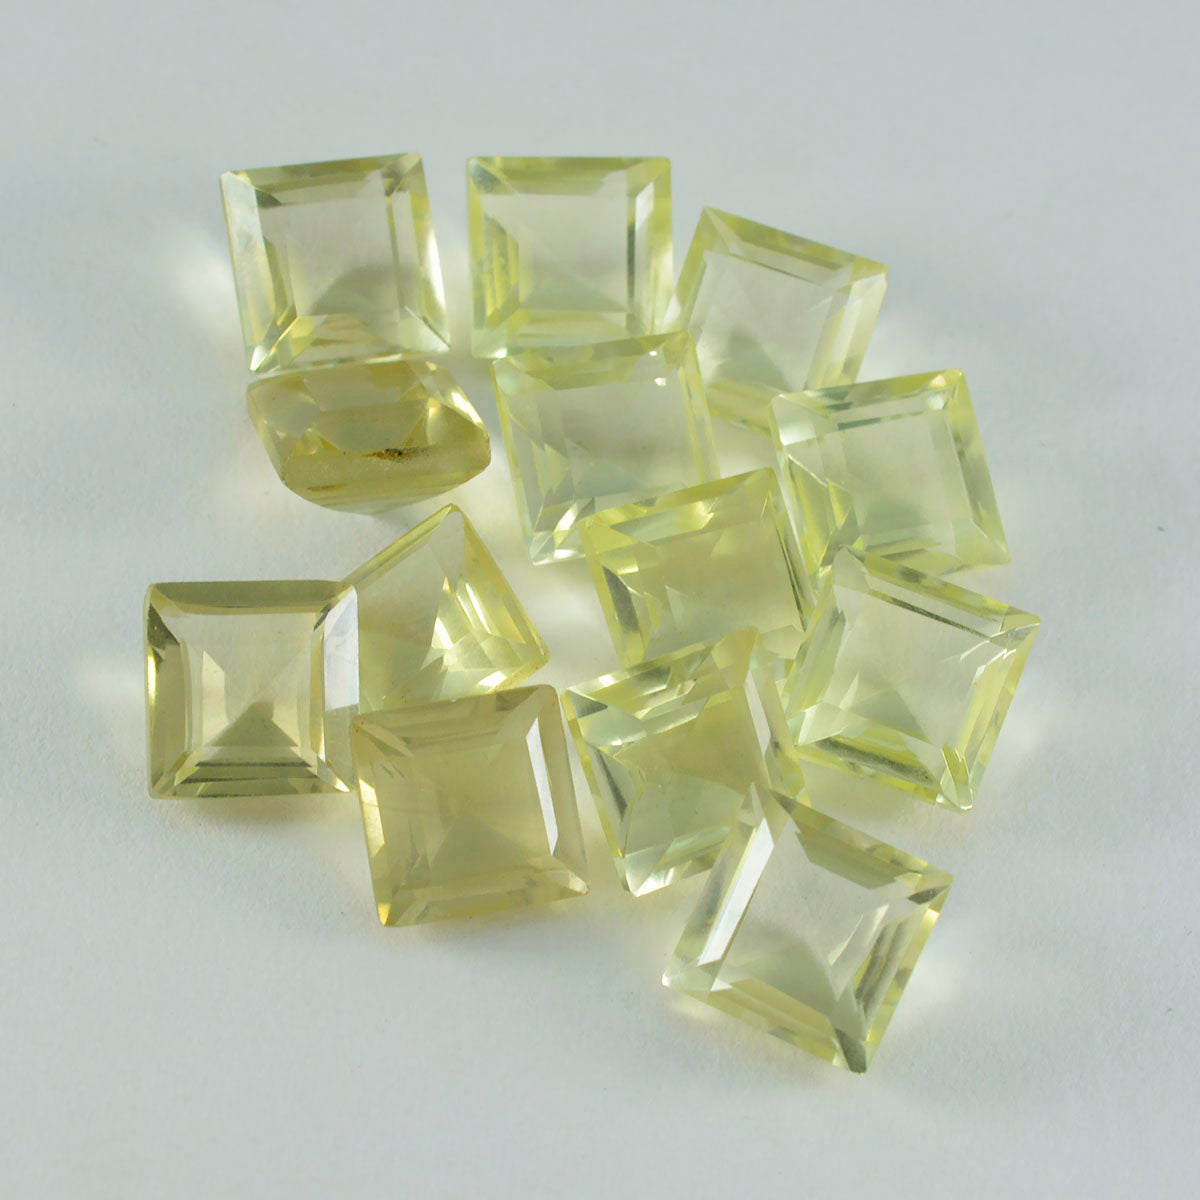 Riyogems 1 Stück gelber Zitronenquarz, facettiert, 7 x 7 mm, quadratische Form, A1-Qualitätsedelsteine